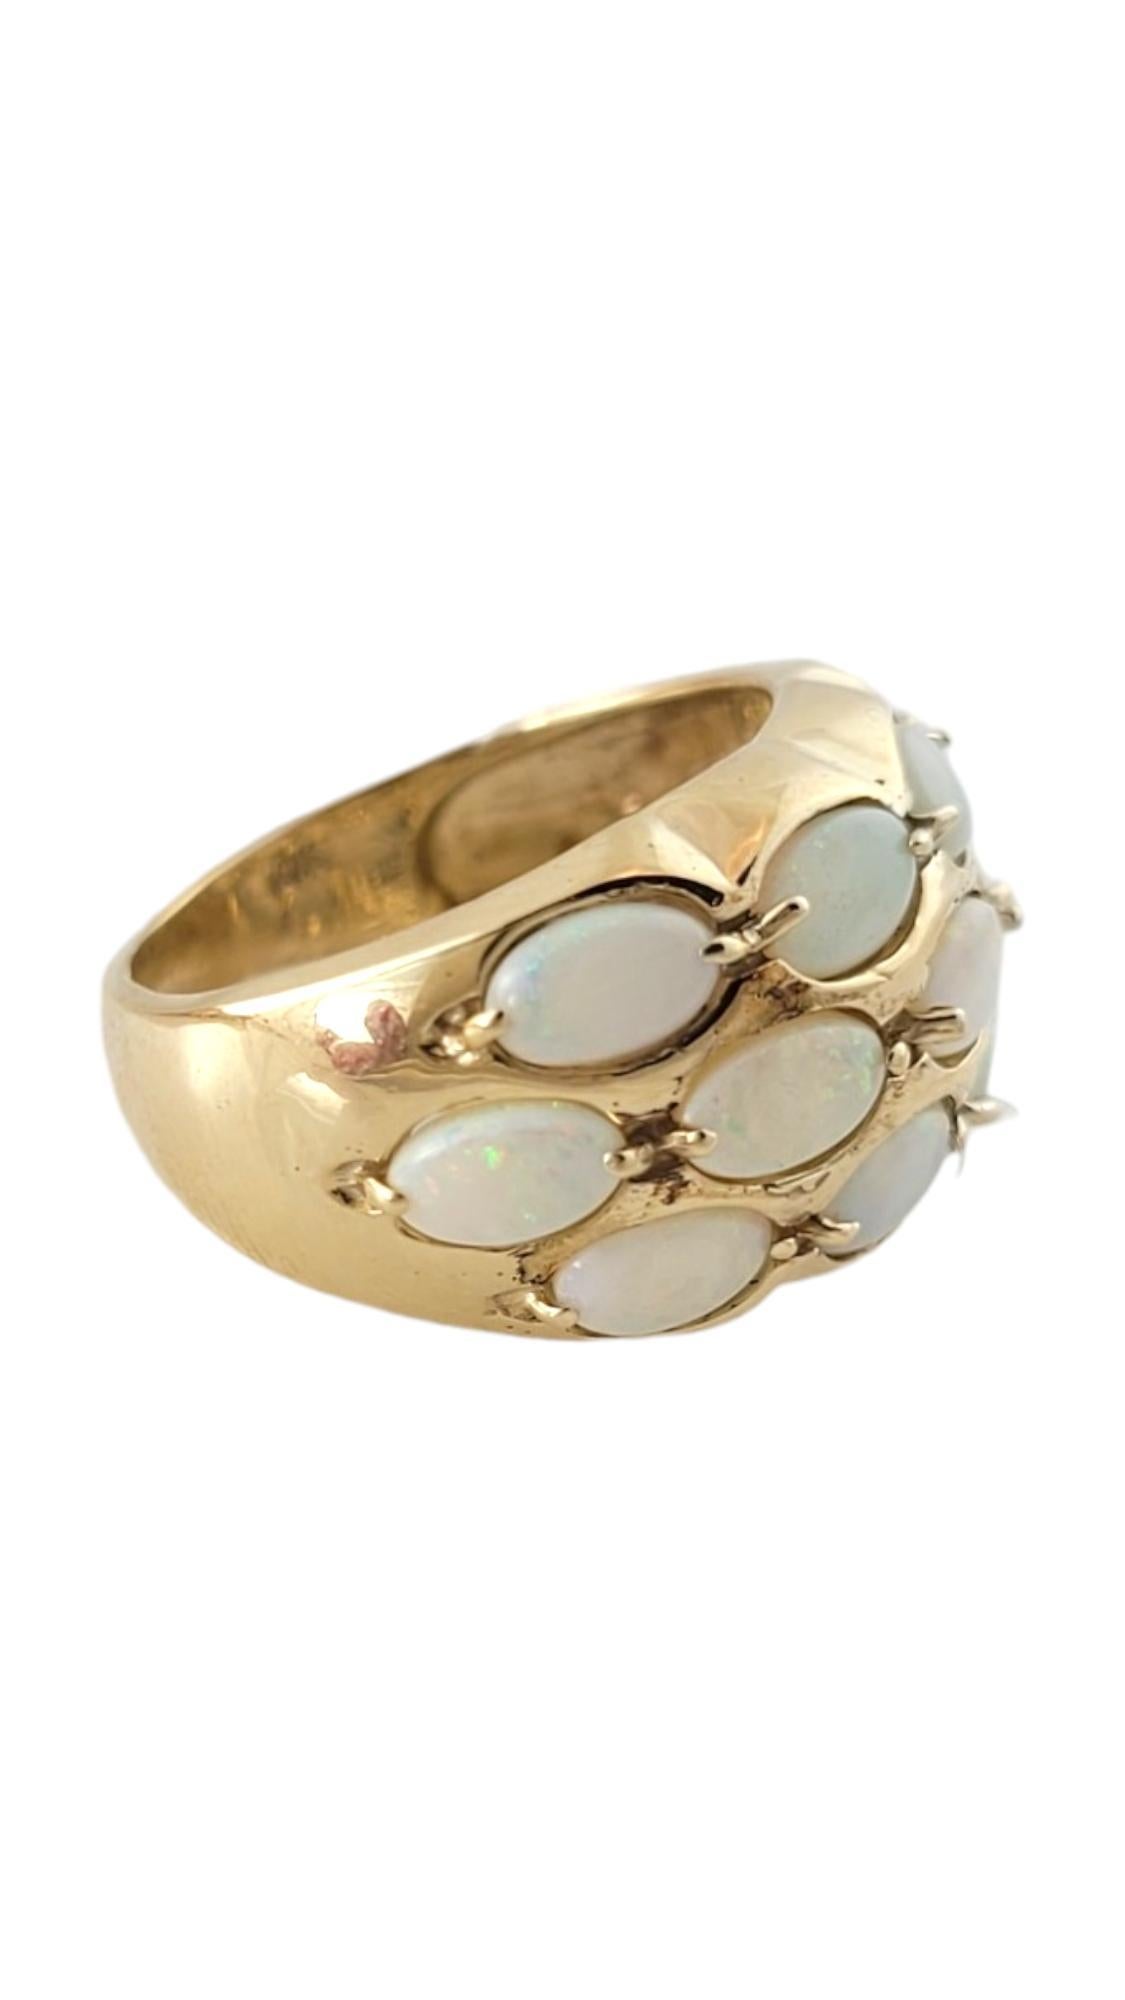 Vintage 10K Yellow Gold Opal Band Ring Size 4.5

Cette magnifique bague en or 10 carats est ornée de 13 opales étincelantes pour un look à couper le souffle !

Taille de l'anneau : 4.5
Queue : 3.1mm
Avant : 21,7 mm X 11,9 mm X 4,7 mm

Poids : 2,7